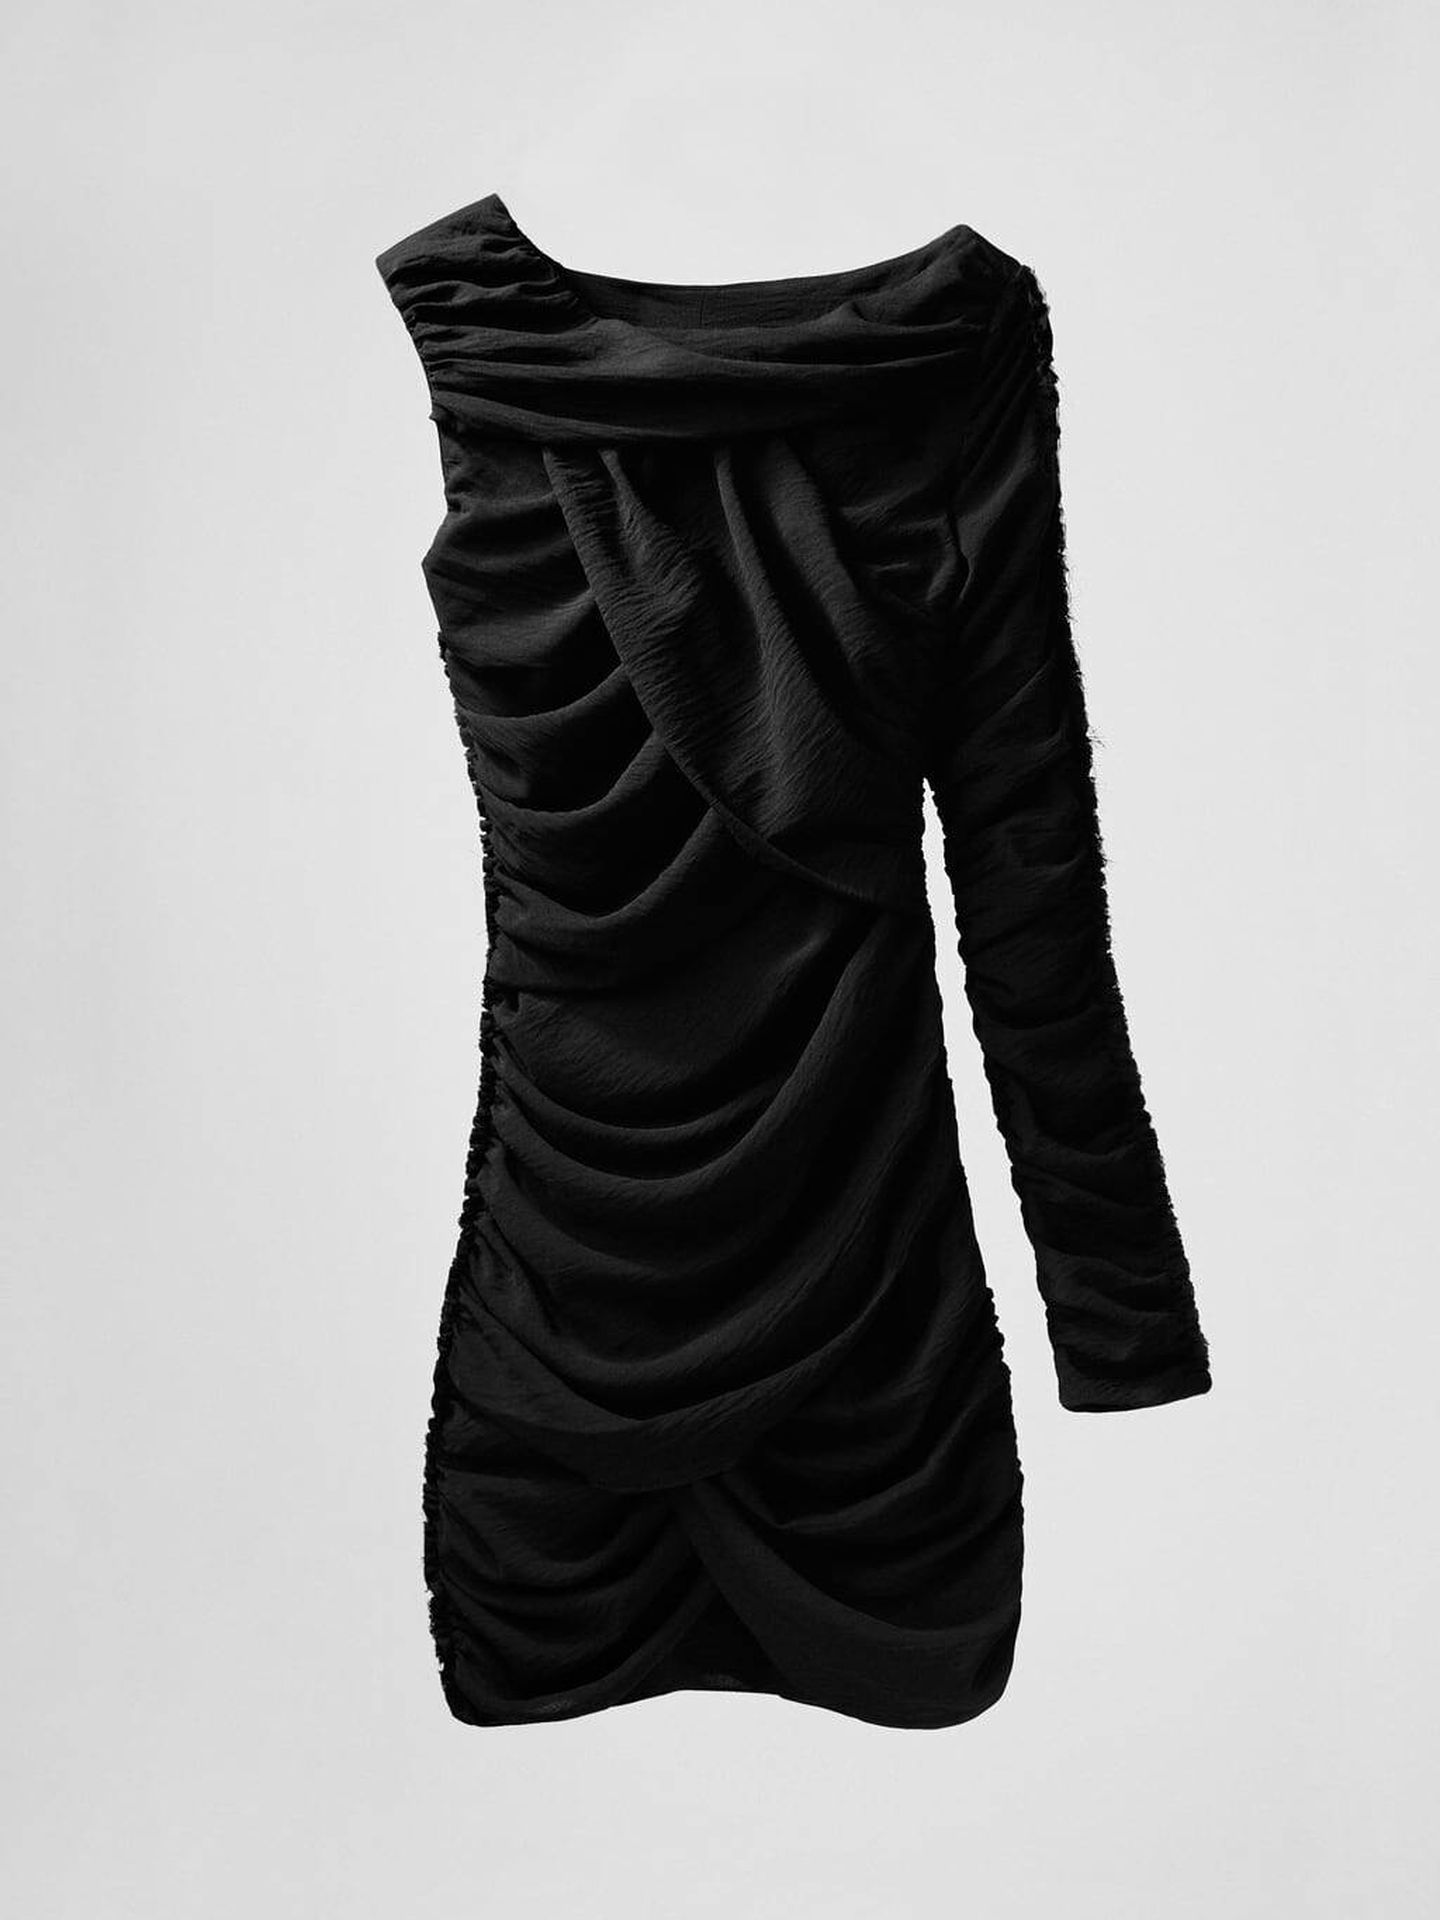 Vestido negro de edición limitada. (Zara/Cortesía)